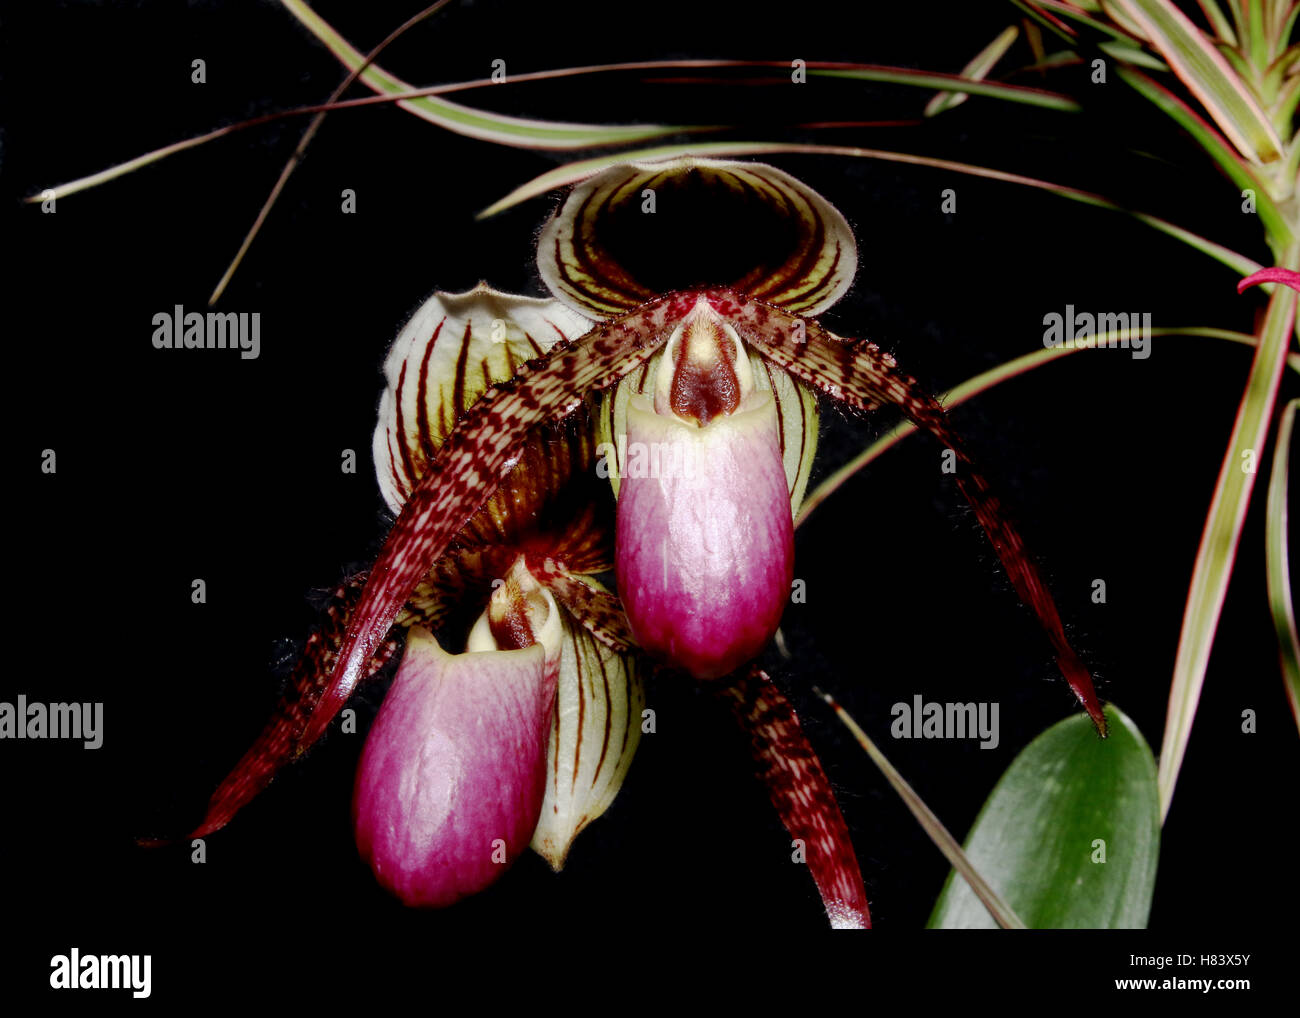 Lady Slipper Orchid. Lady's Slipper Orchid. Paphiopedilum Trandoll.  Paphiopedilum liemianum x Paphiopedilum rothschildianum. Orc Stock Photo -  Alamy